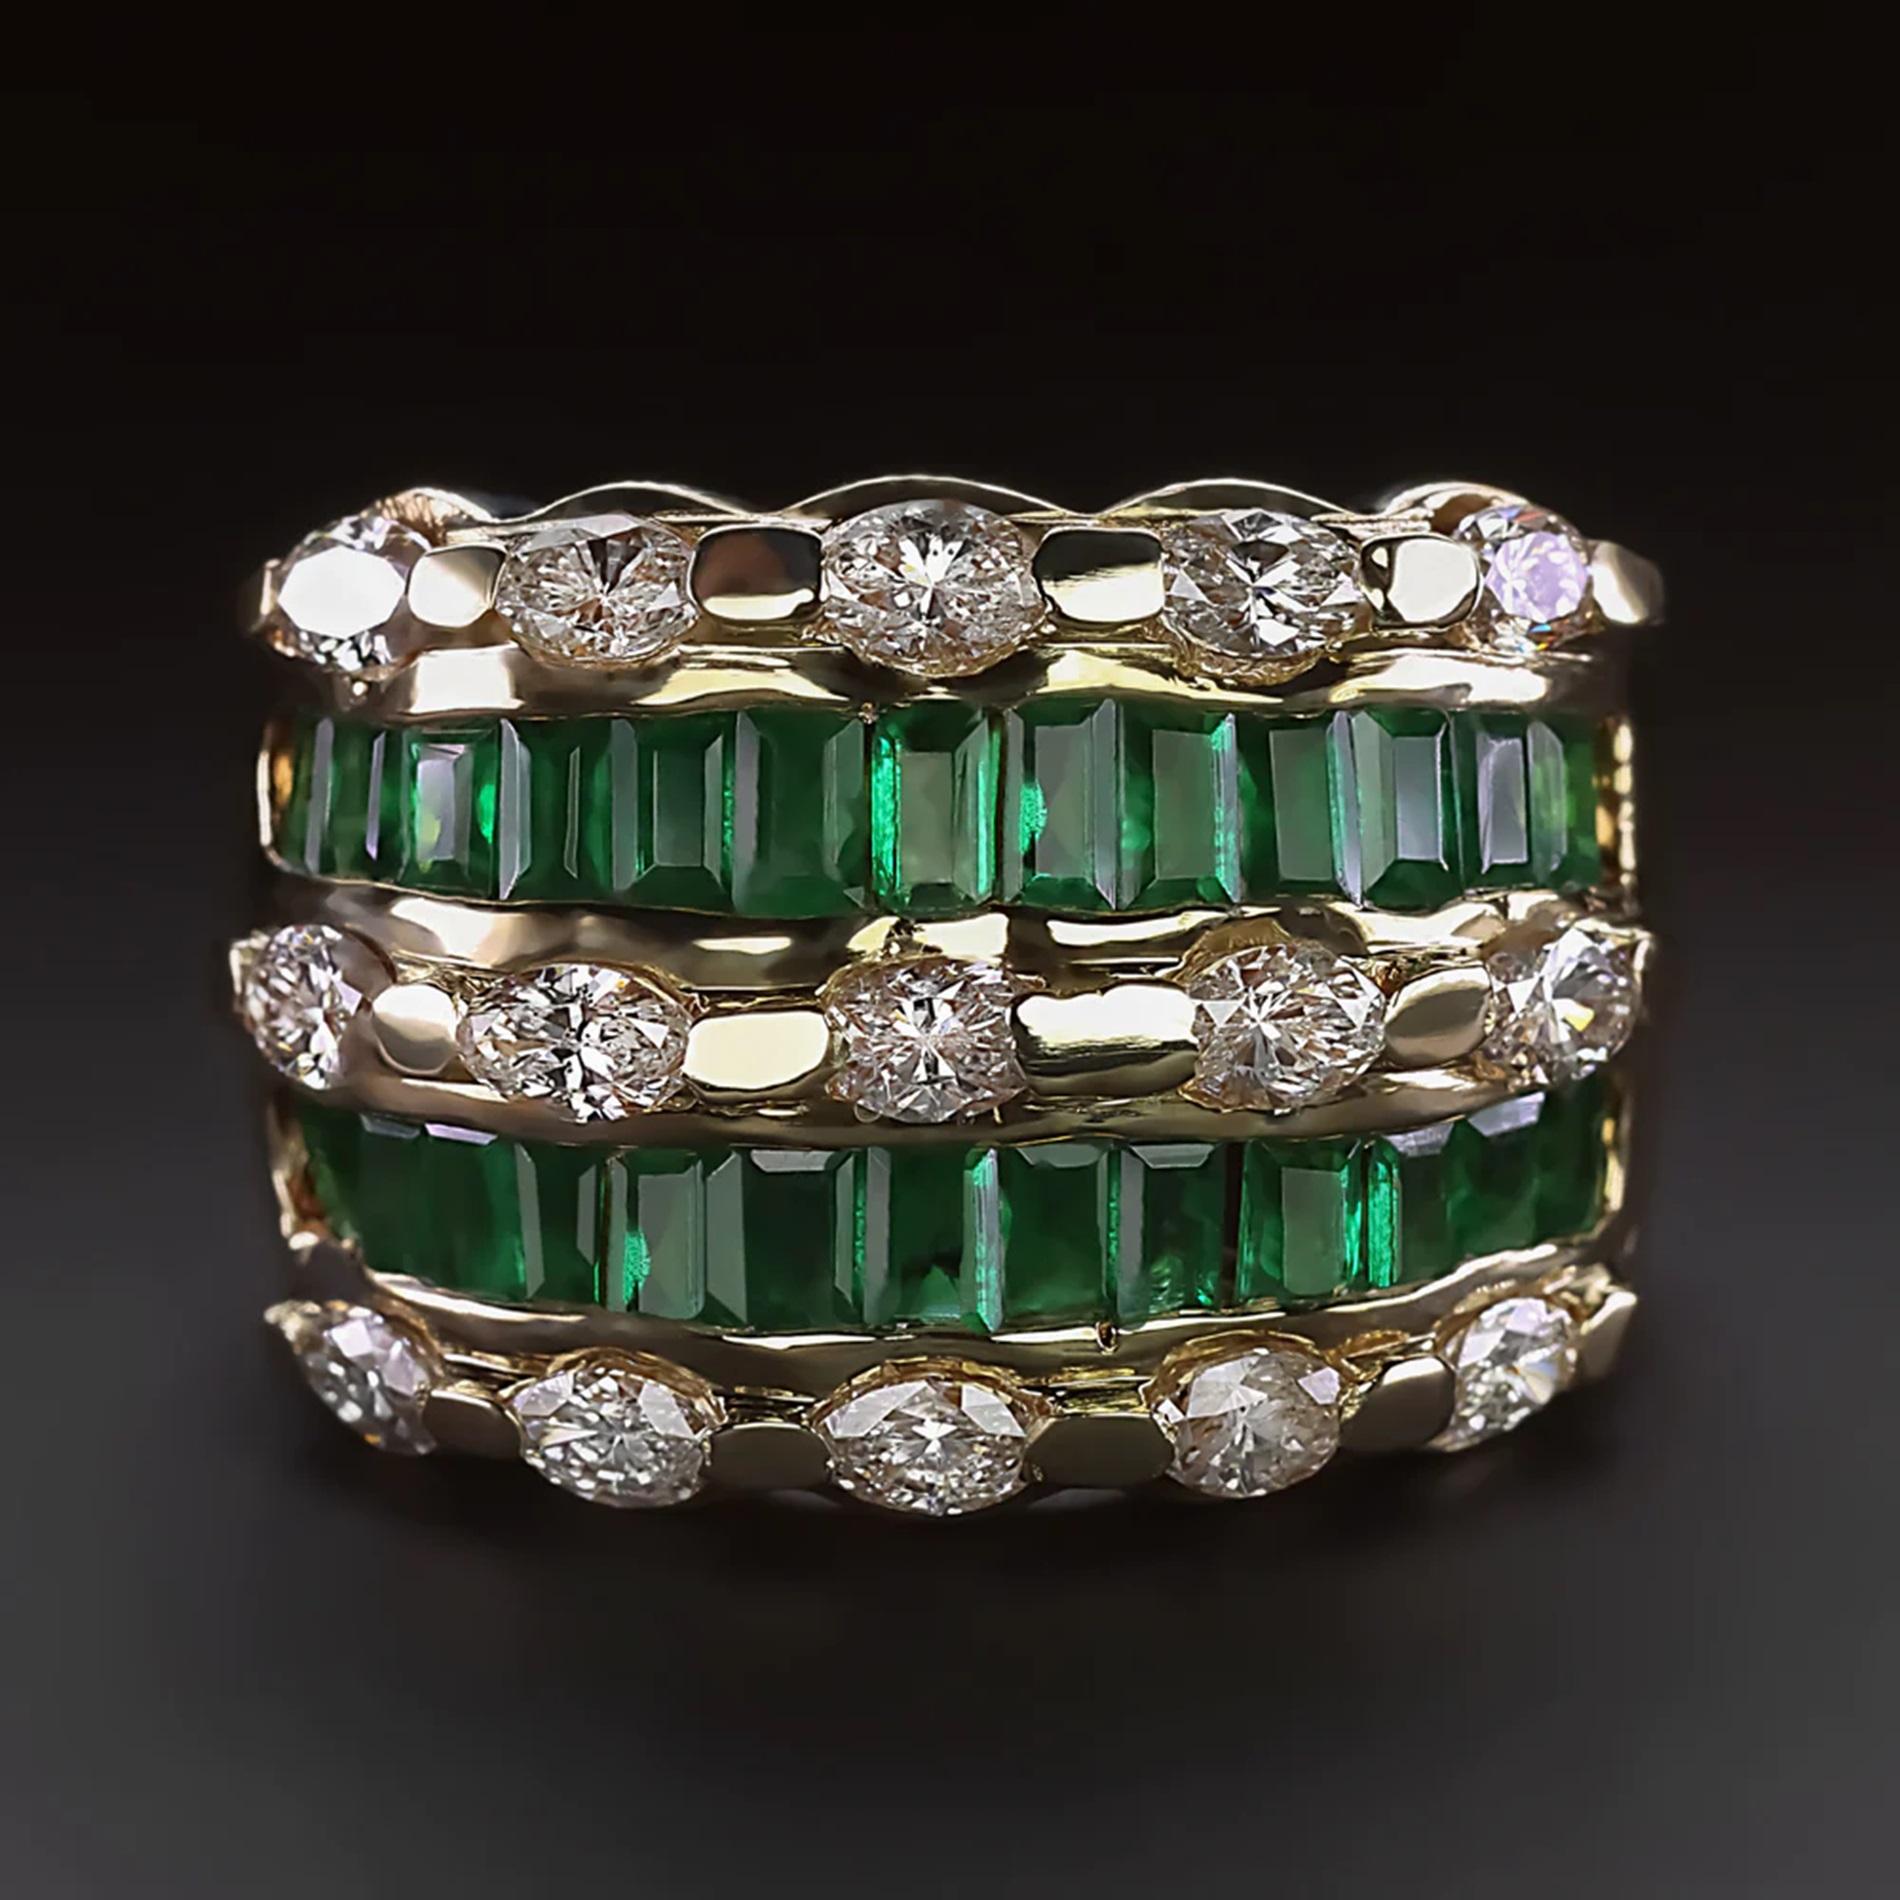 Ce large bracelet de diamants et d'émeraudes offre un look luxueux et accrocheur avec une couleur riche et un éclat brillant !

Faits marquants :

- 1,50 carat de diamants taille marquise d'une blancheur éclatante et d'une pureté irréprochable

-